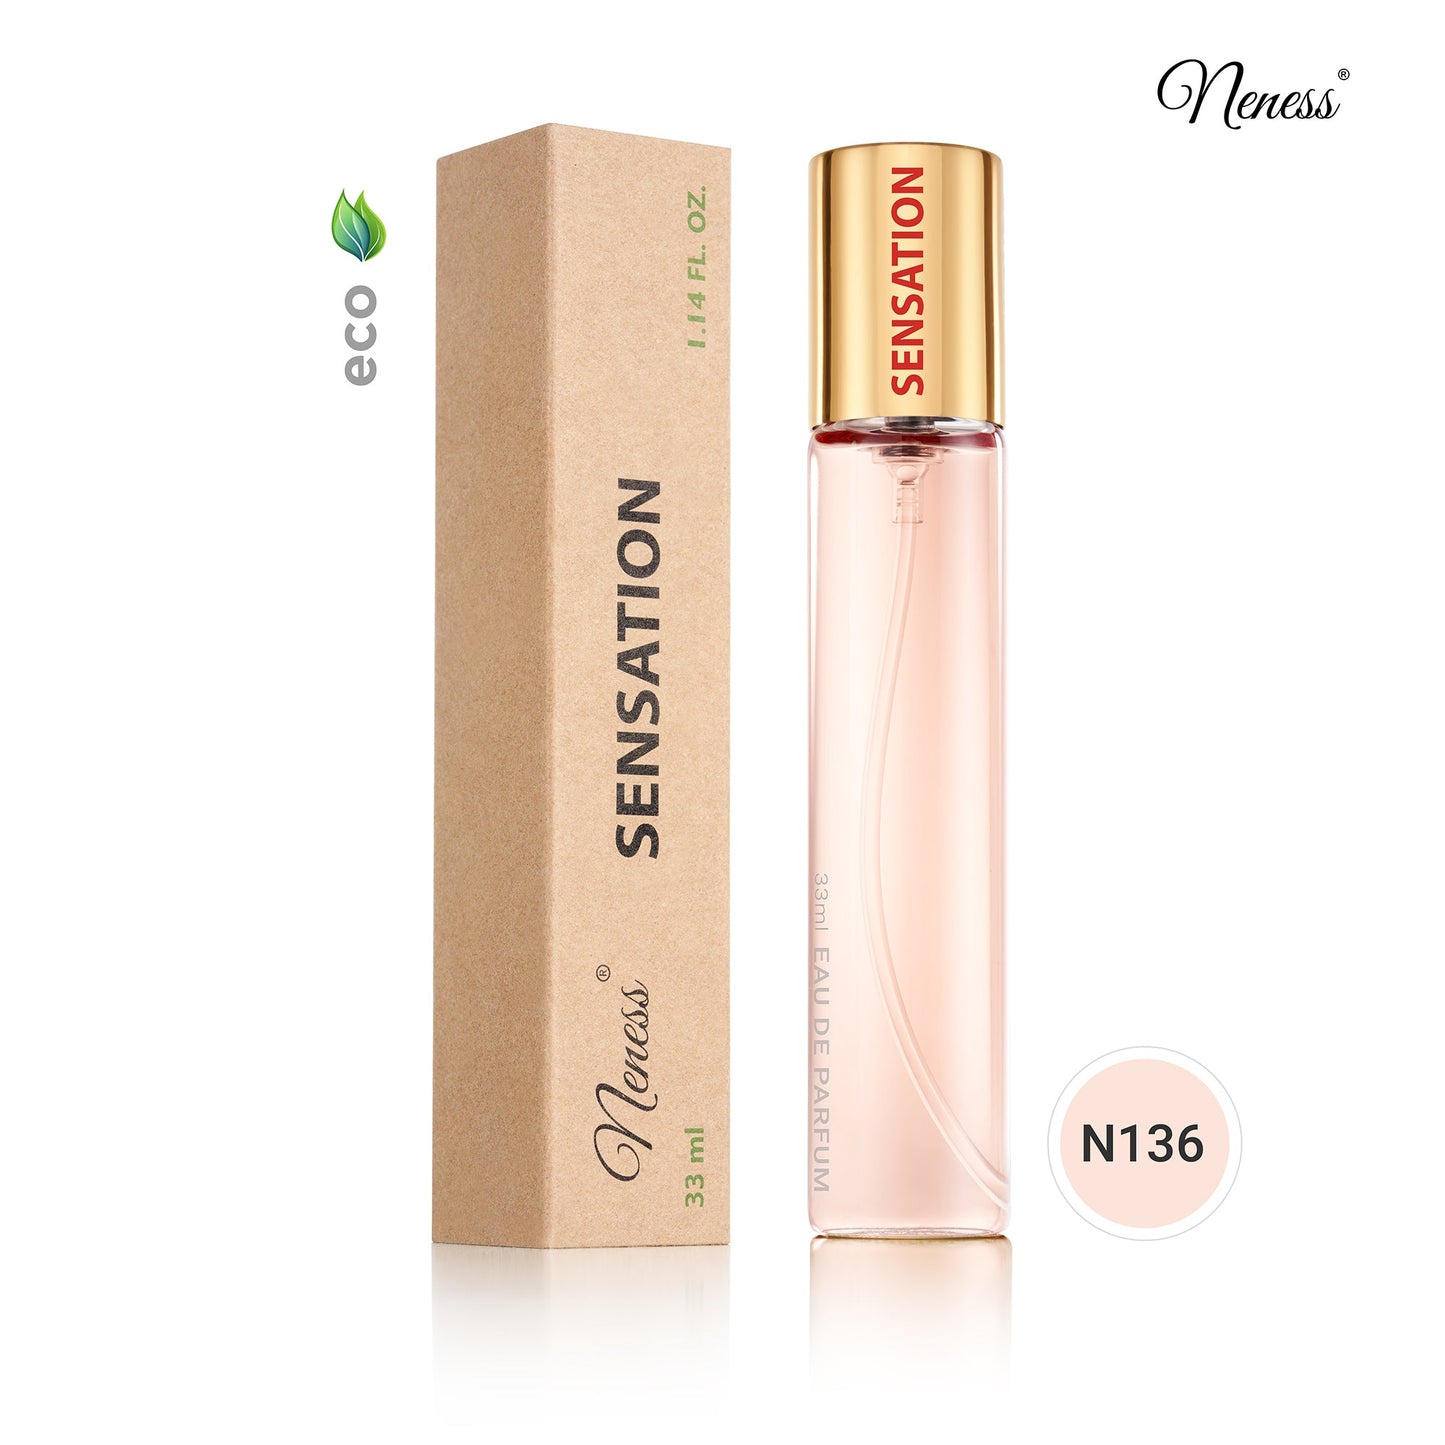 N136. Neness Sensation - 33 ml - Parfum Pour Femme